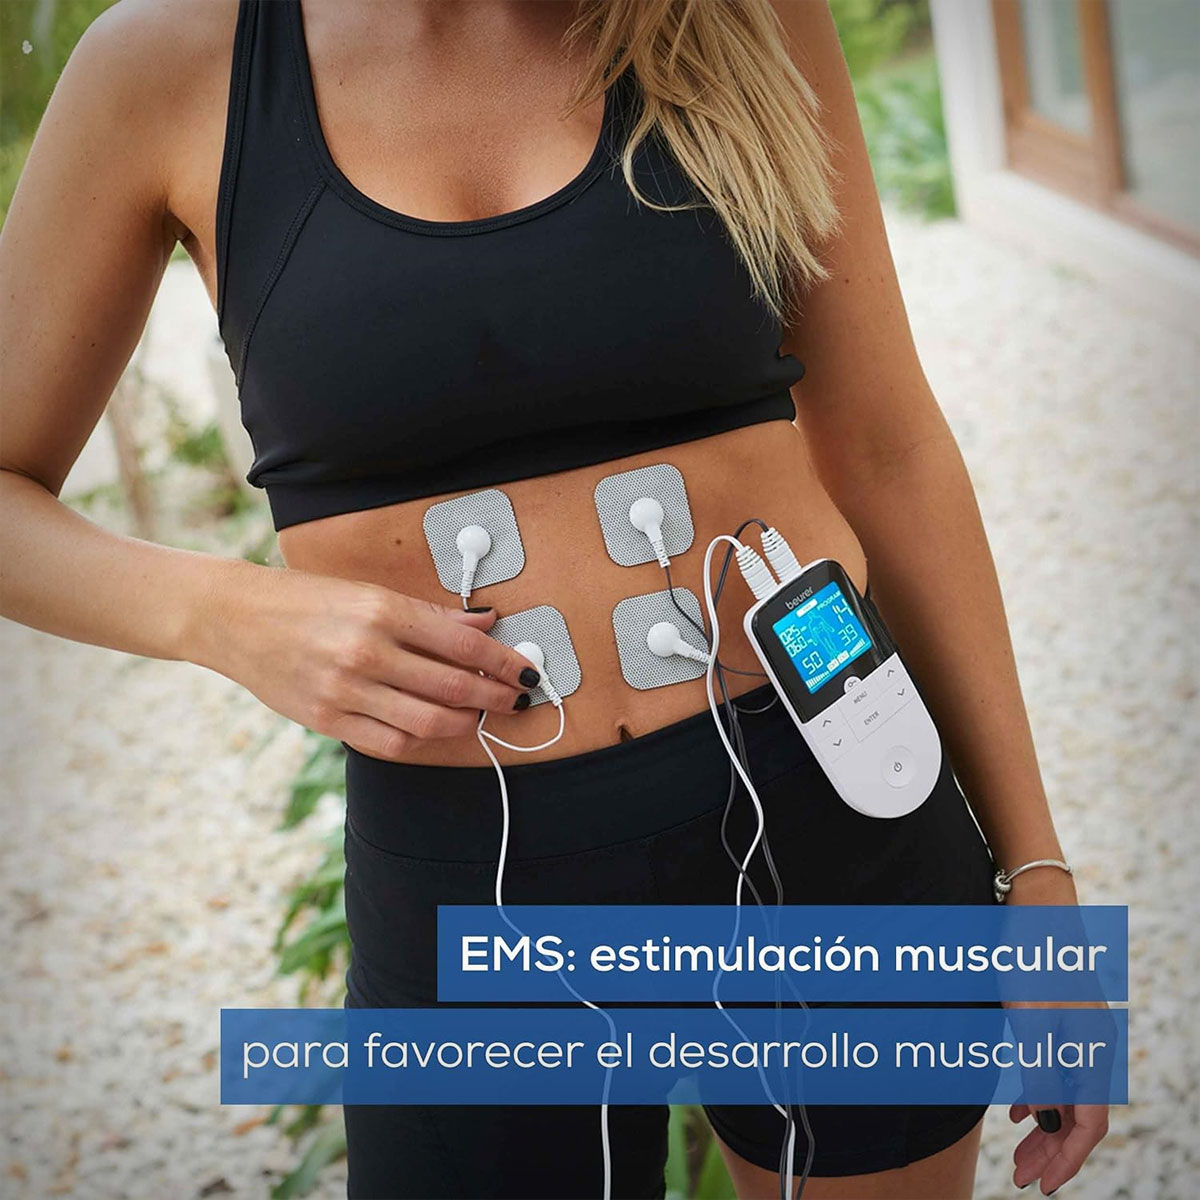 Beurer EM 49 Digital, el electroestimulador con función de masaje deportivo (EMS) y alivio del dolor (TENS) que arrasa en Amazon